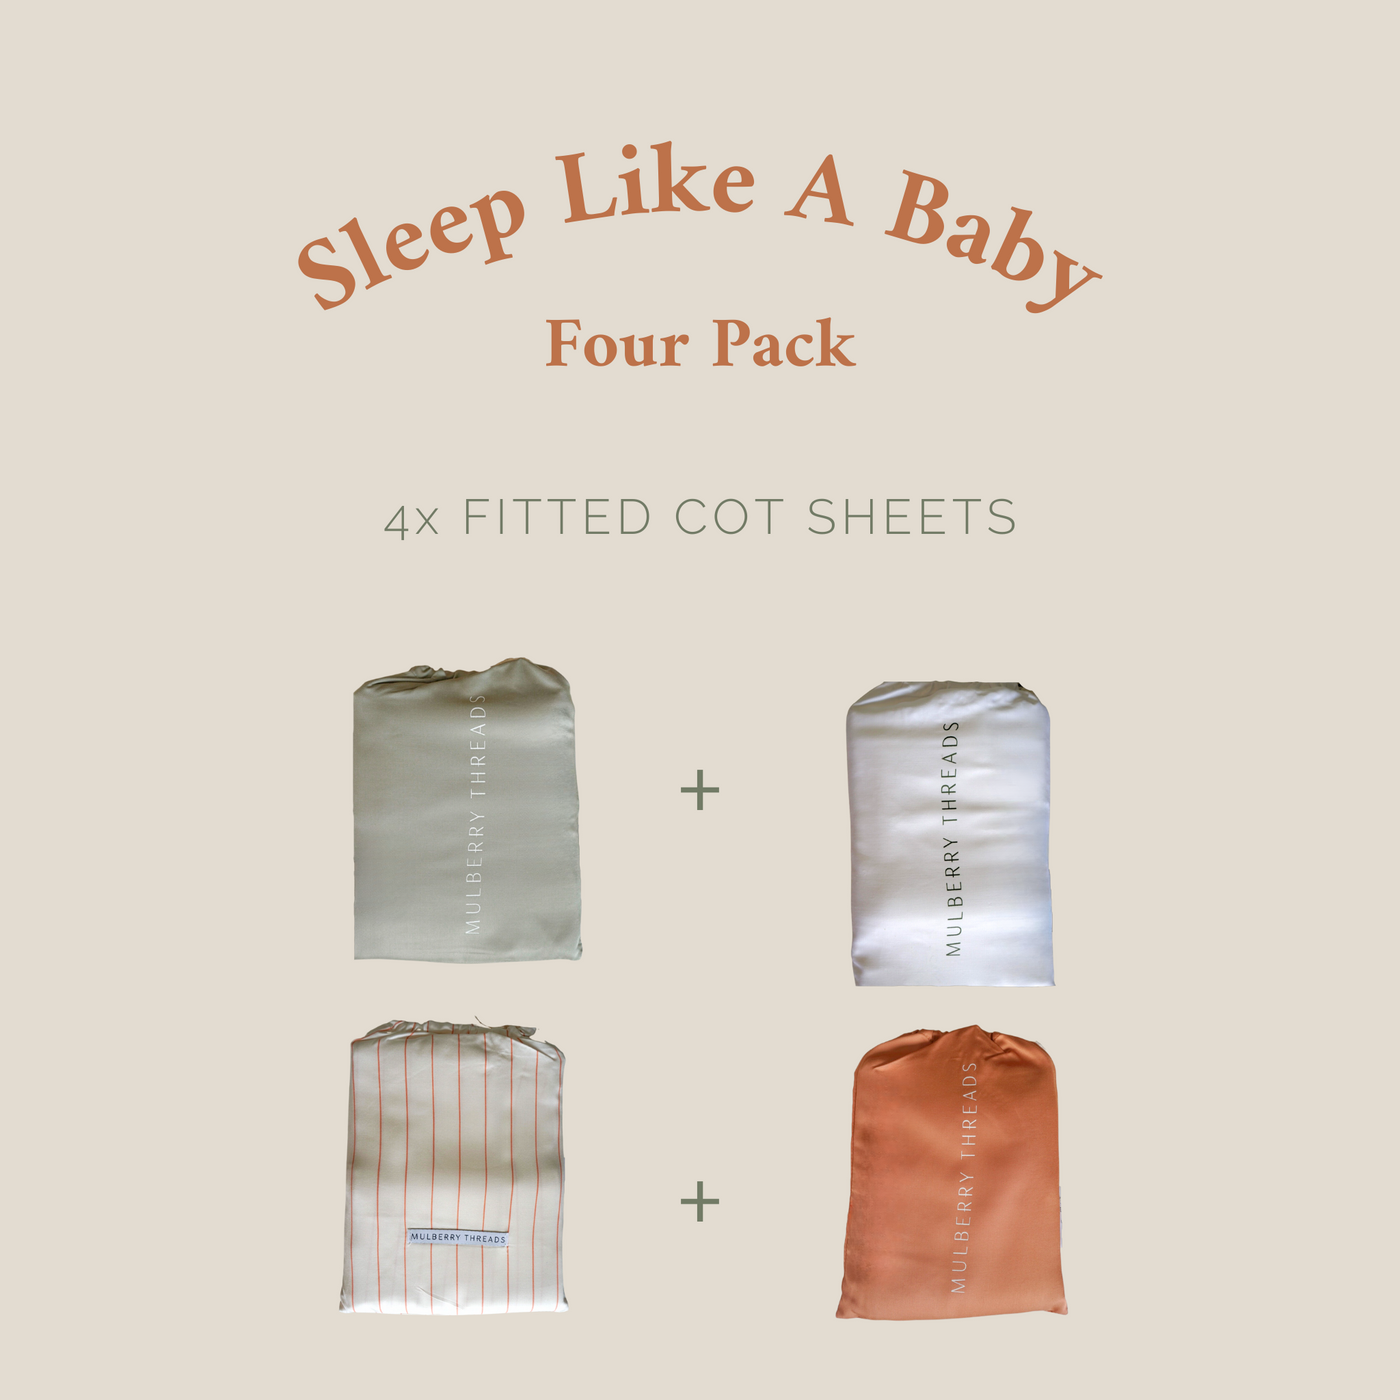 Sleep Like a Baby - Four Pack